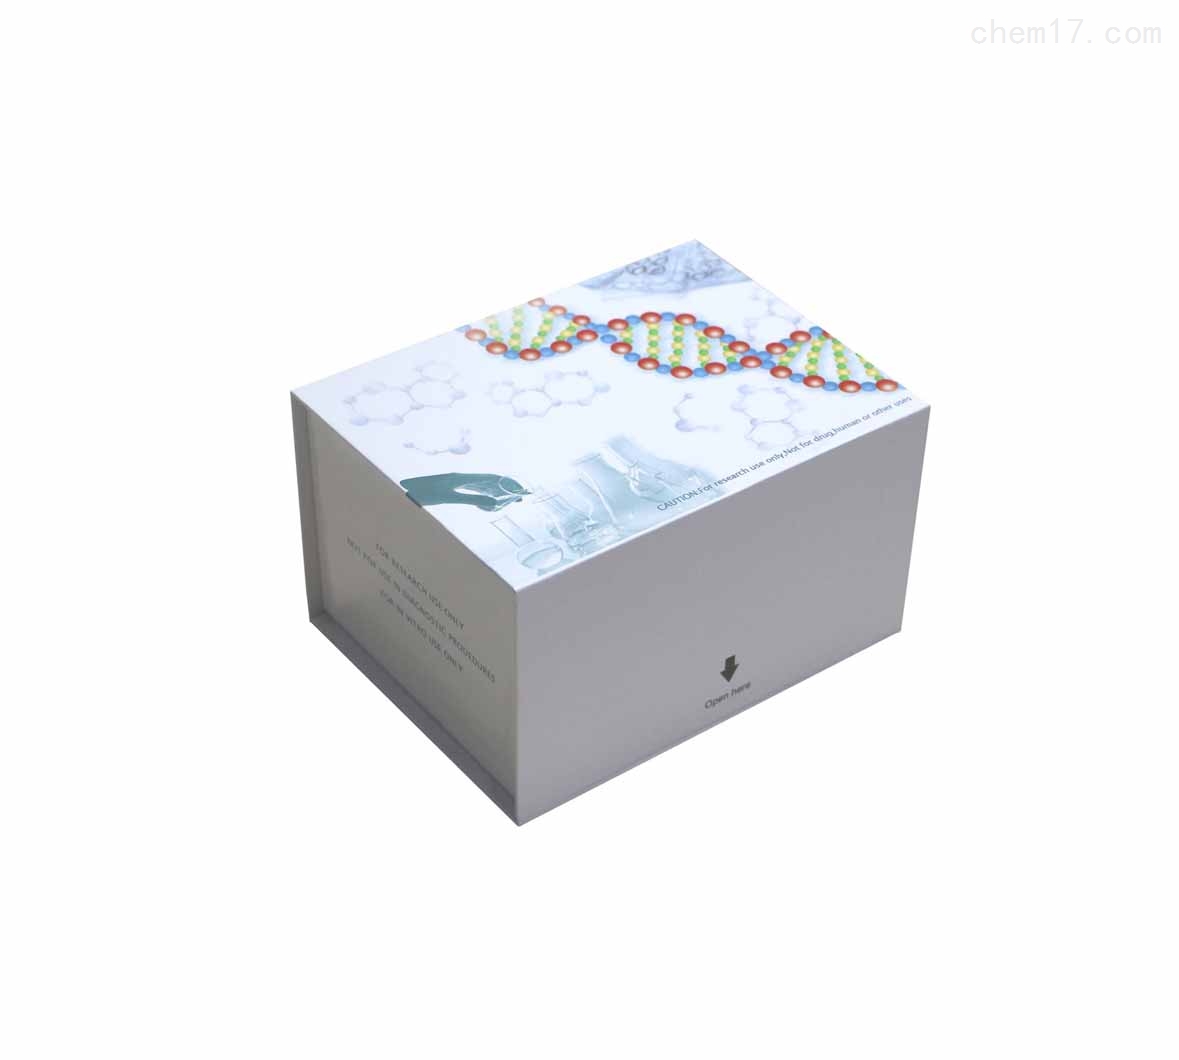 人丝裂原活化蛋白激酶(MAPK)ELISA试剂盒